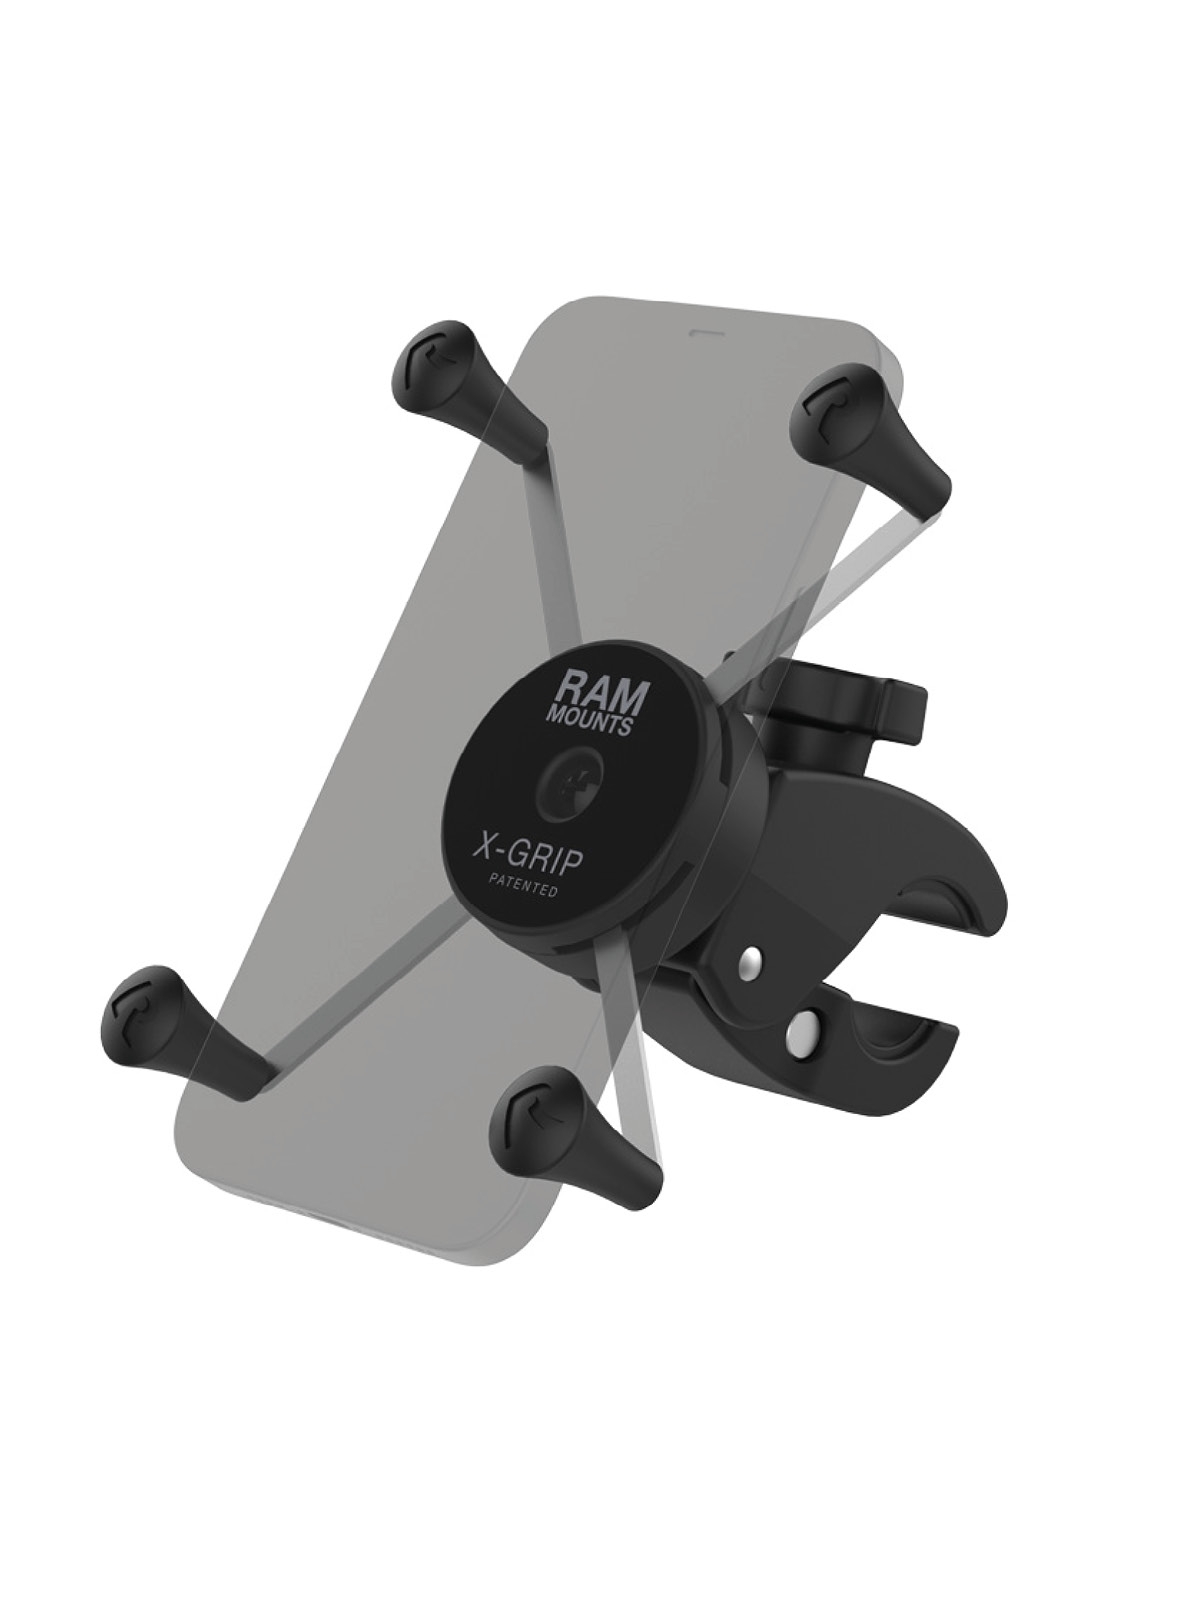 RAM Mounts X-Grip Klemm-Halterung für Smartphones - kleine Tough-Claw (Durchmesser 15,9-29,0 mm), direkte X-Grip-Anbindung